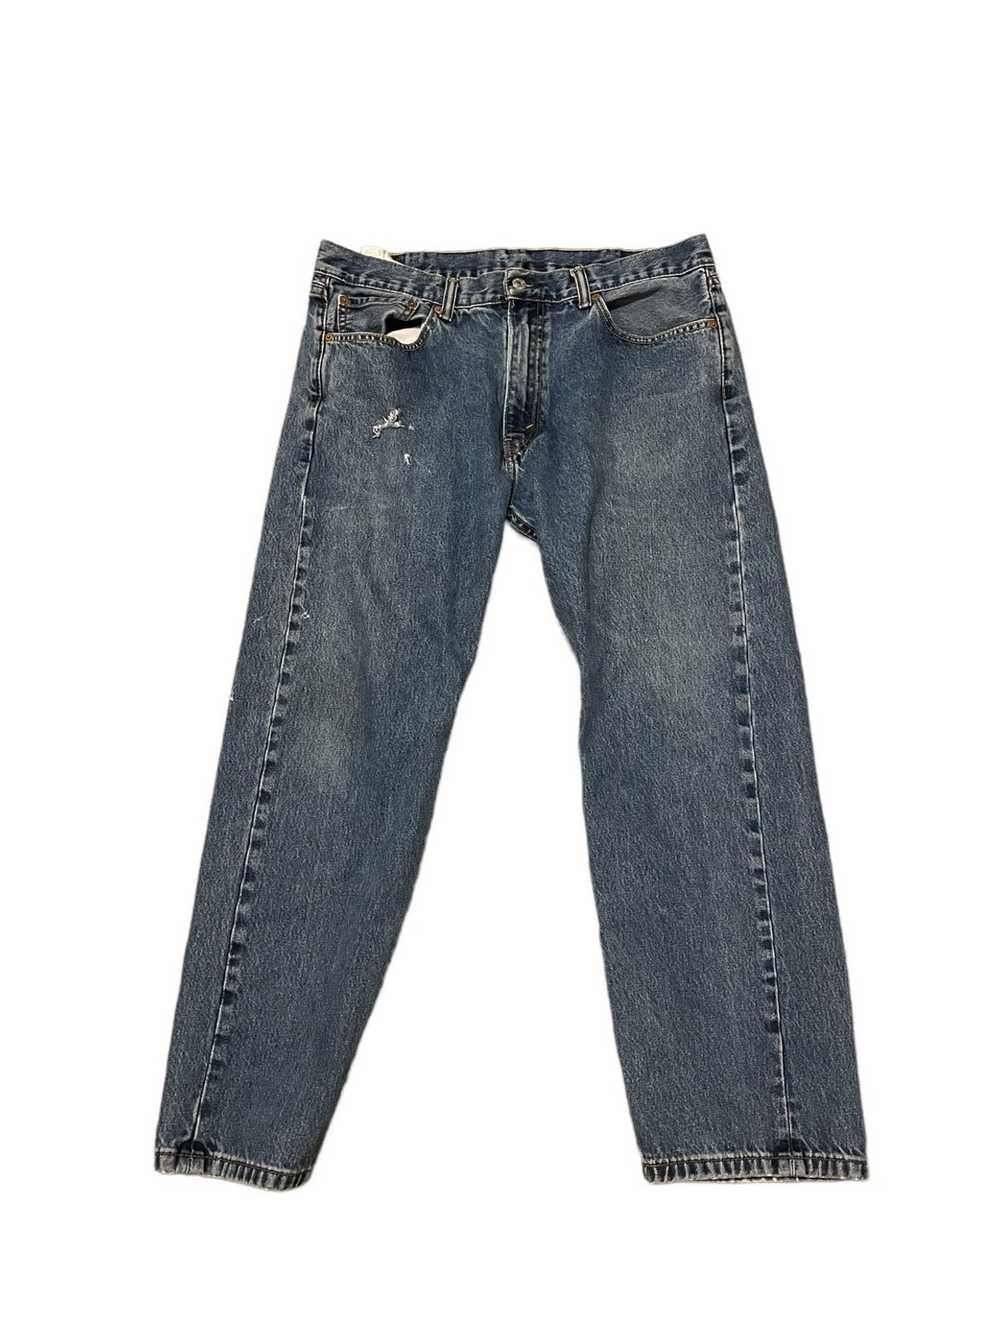 Levi's Vintage Levi jeans - Gem